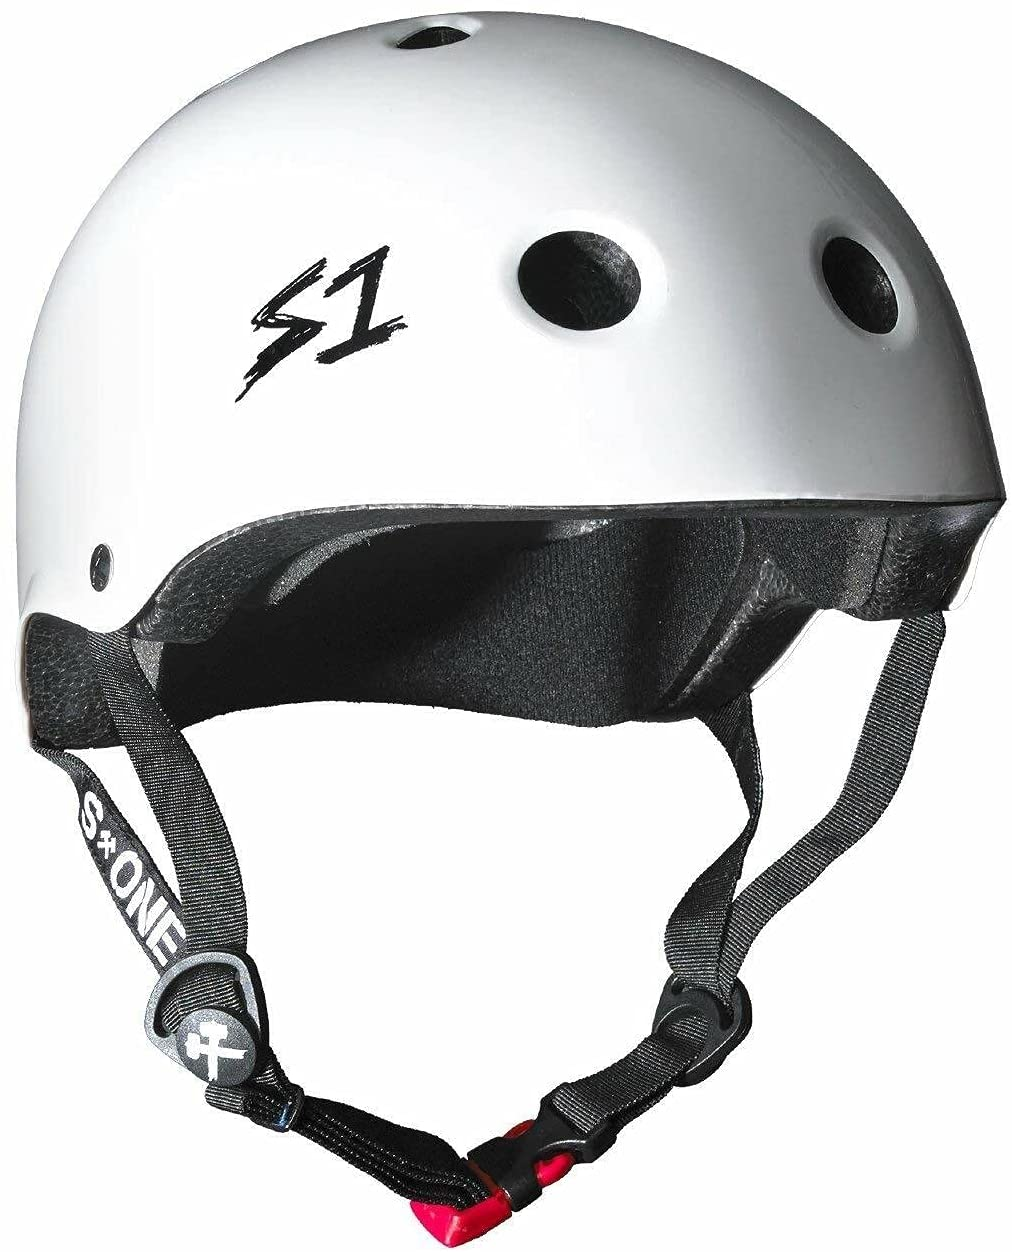 s1 mini lifer best helmet for kids